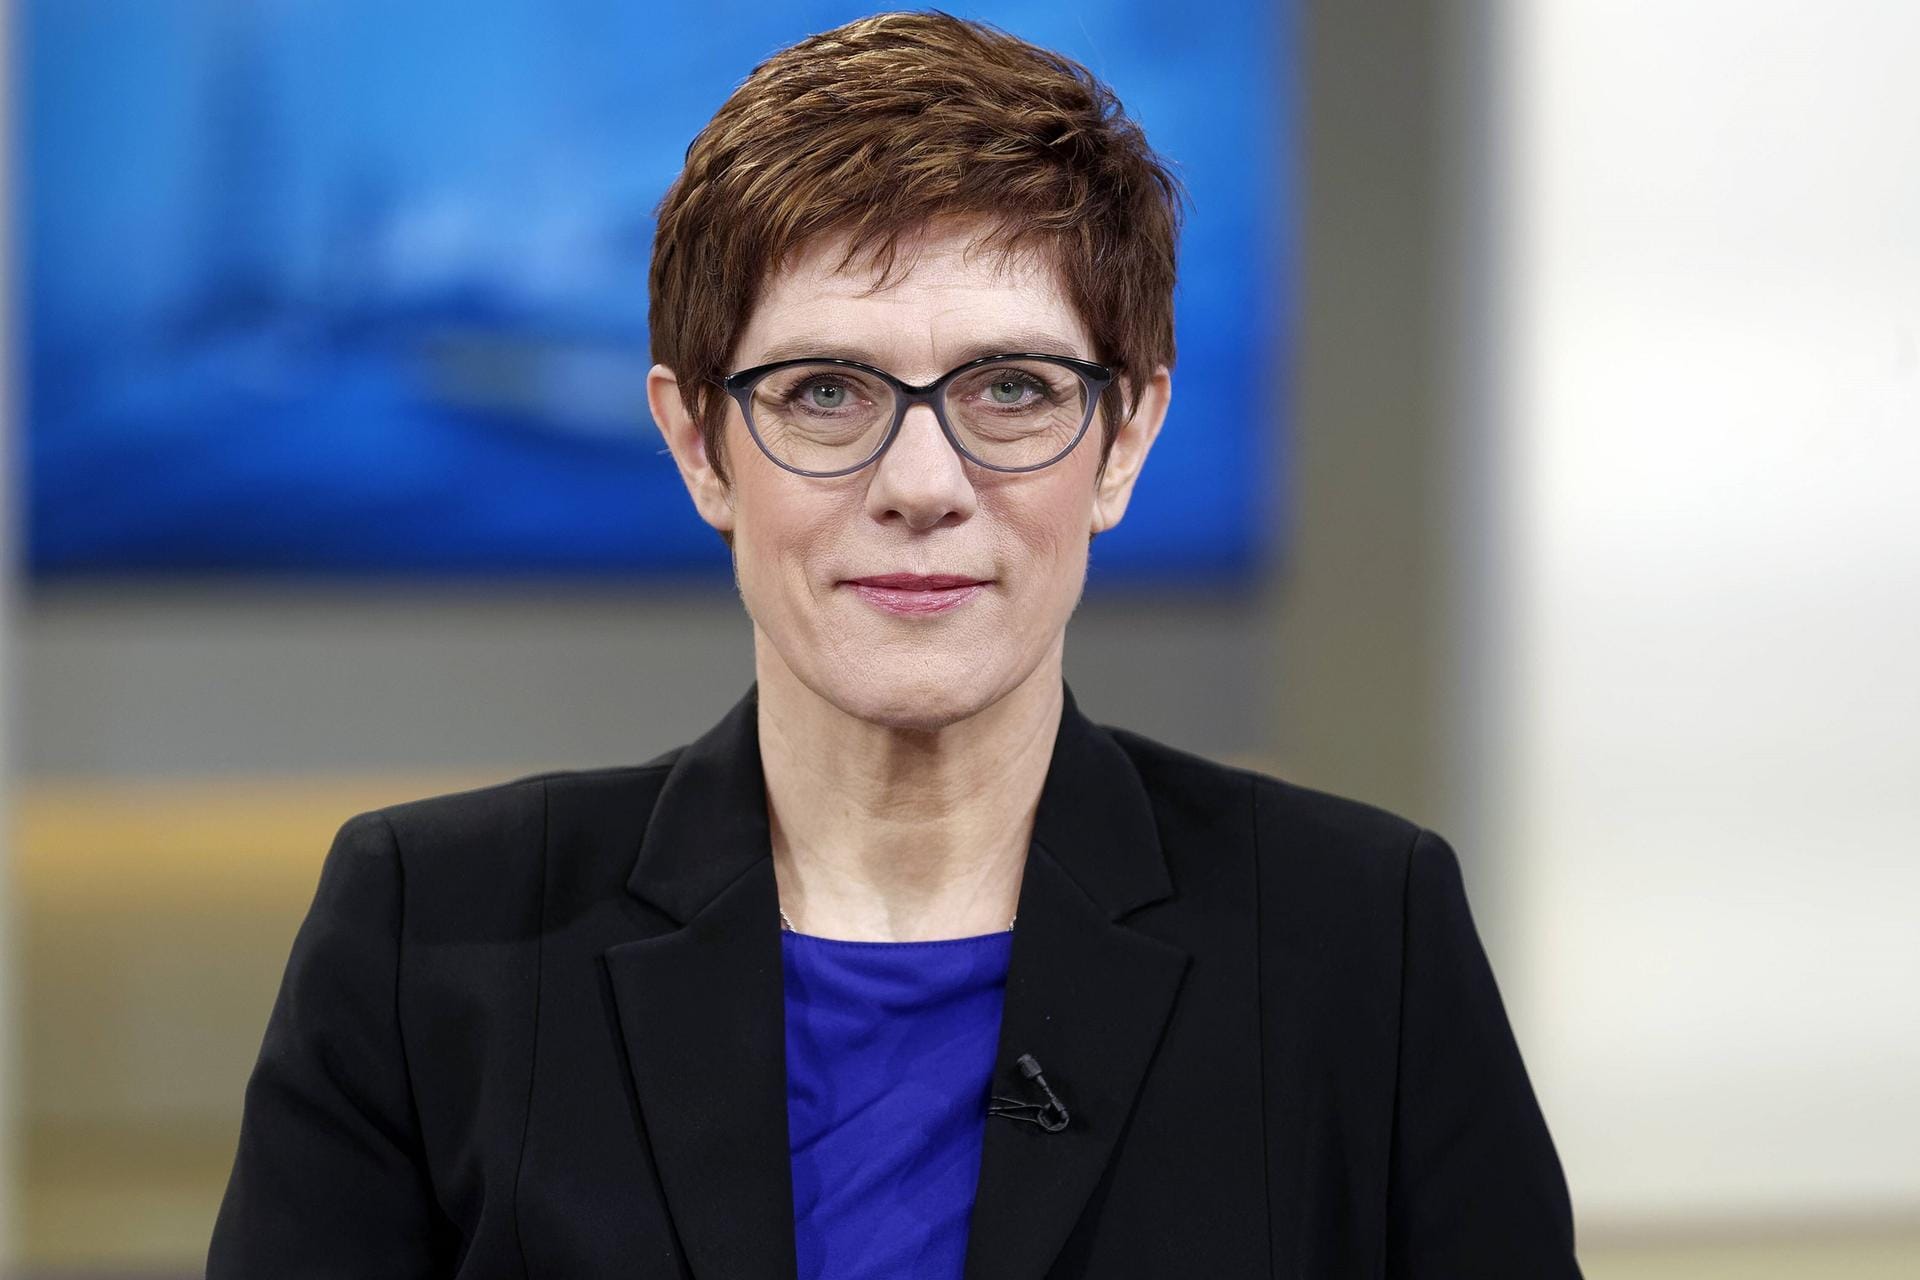 Große Erfolge: 2018 wurde sie mit einer noch dagewesenen, großen Mehrheit von 98,87 Prozent zur CDU-Generalsekretärin gewählt.